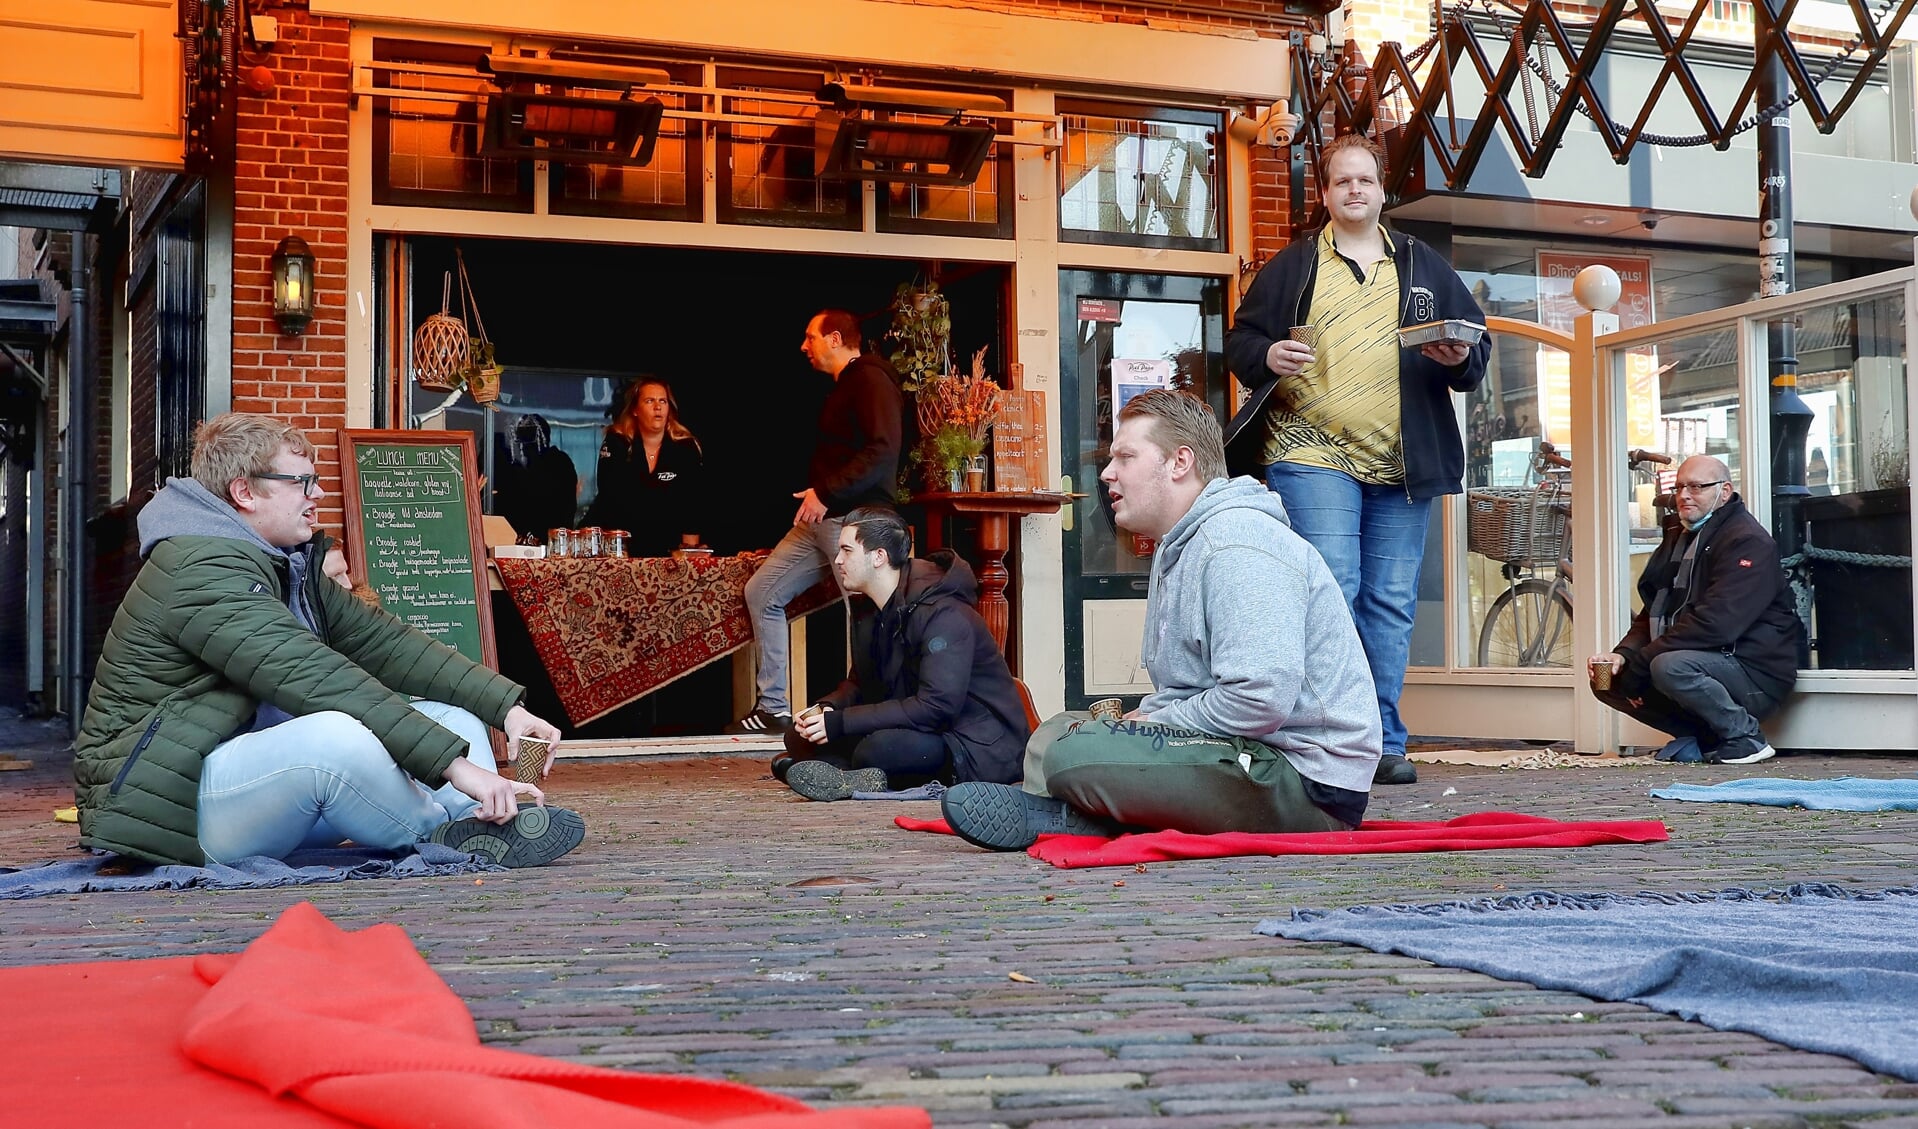 Kleedjes in plaats van een terras bij Piet Pann (foto: Vincent de Vries)